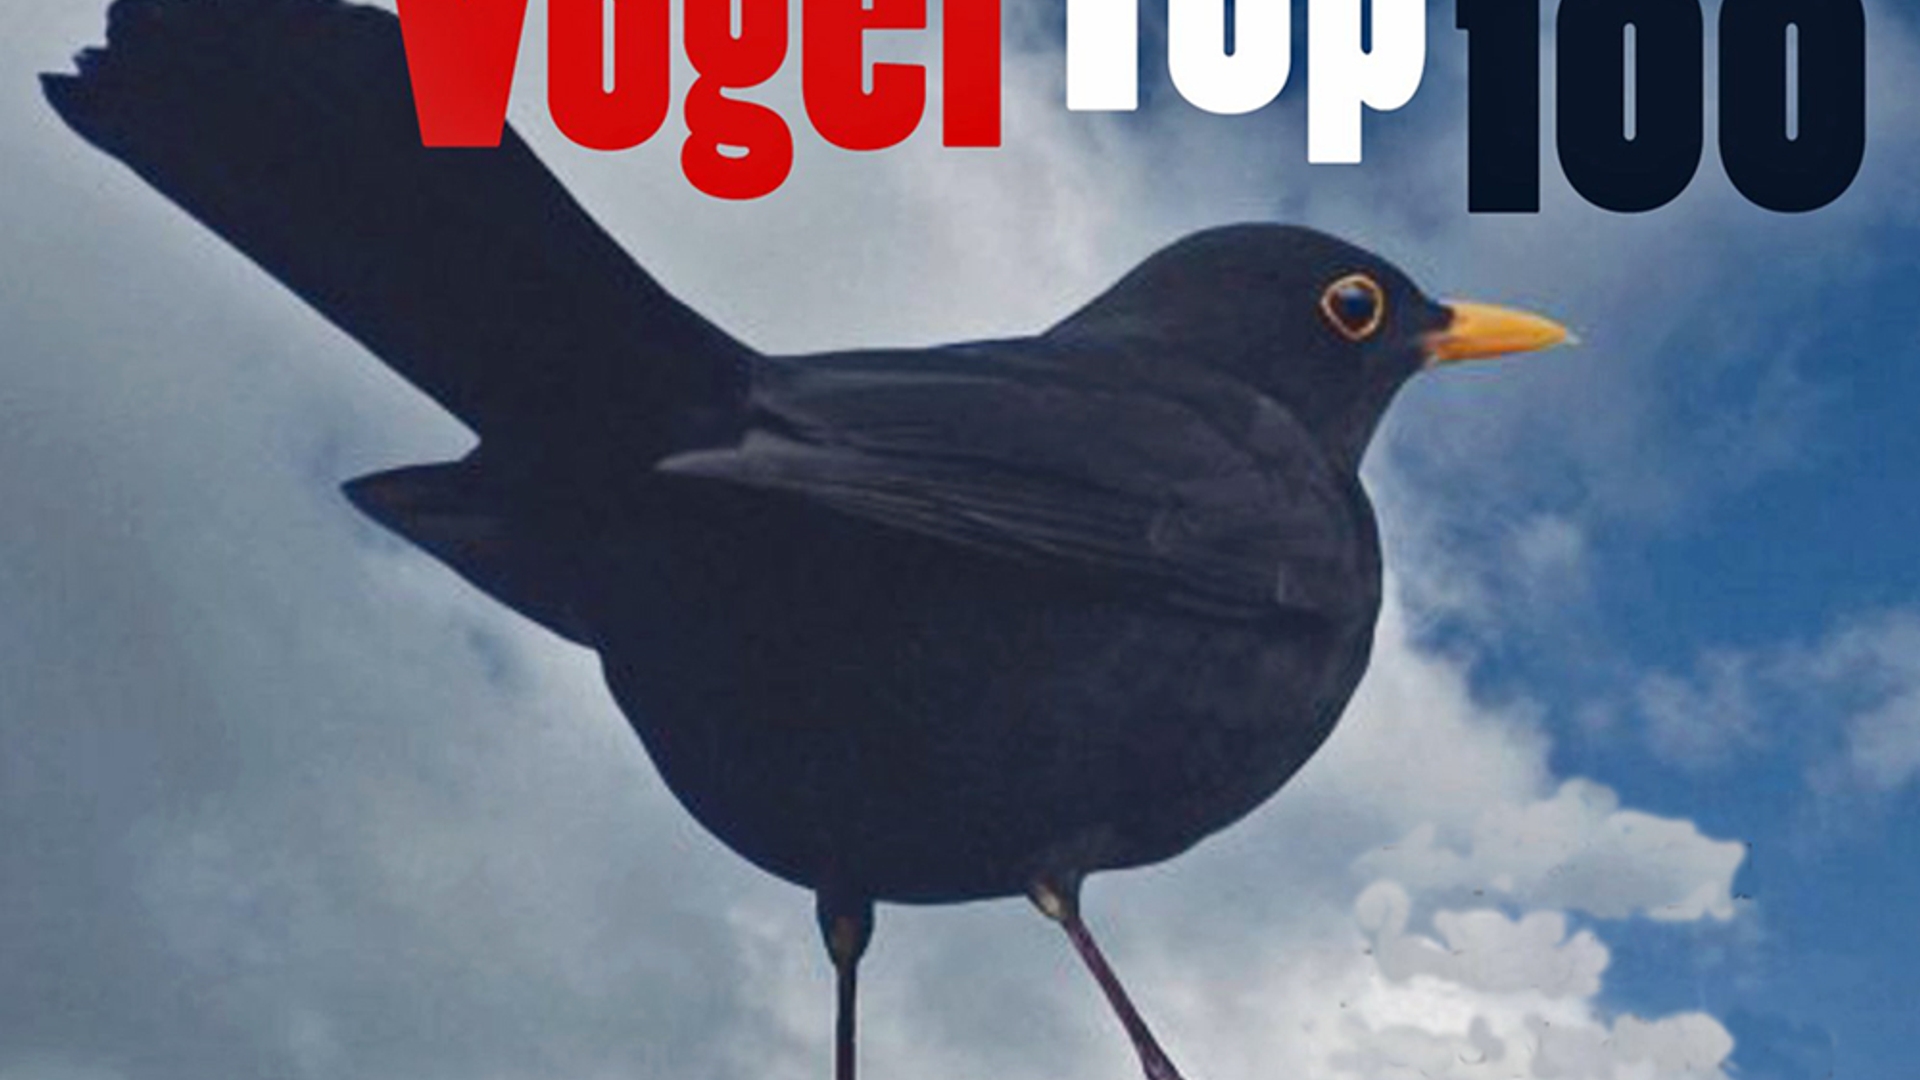 VogelTop100_cd.jpg